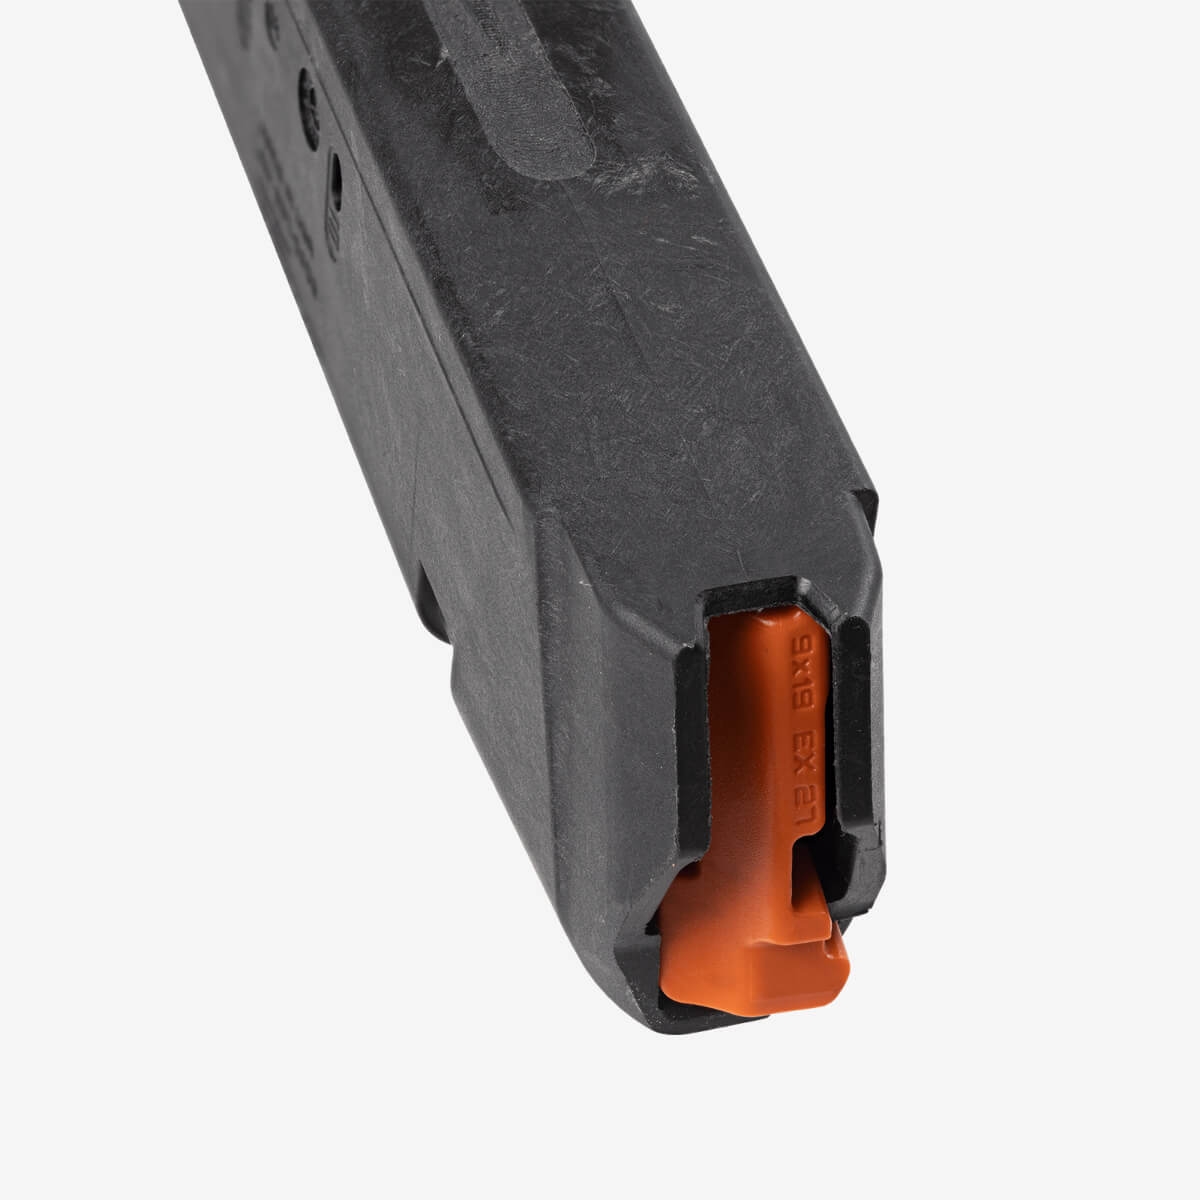 PMAG 27 GL9, 9x19 – Glock